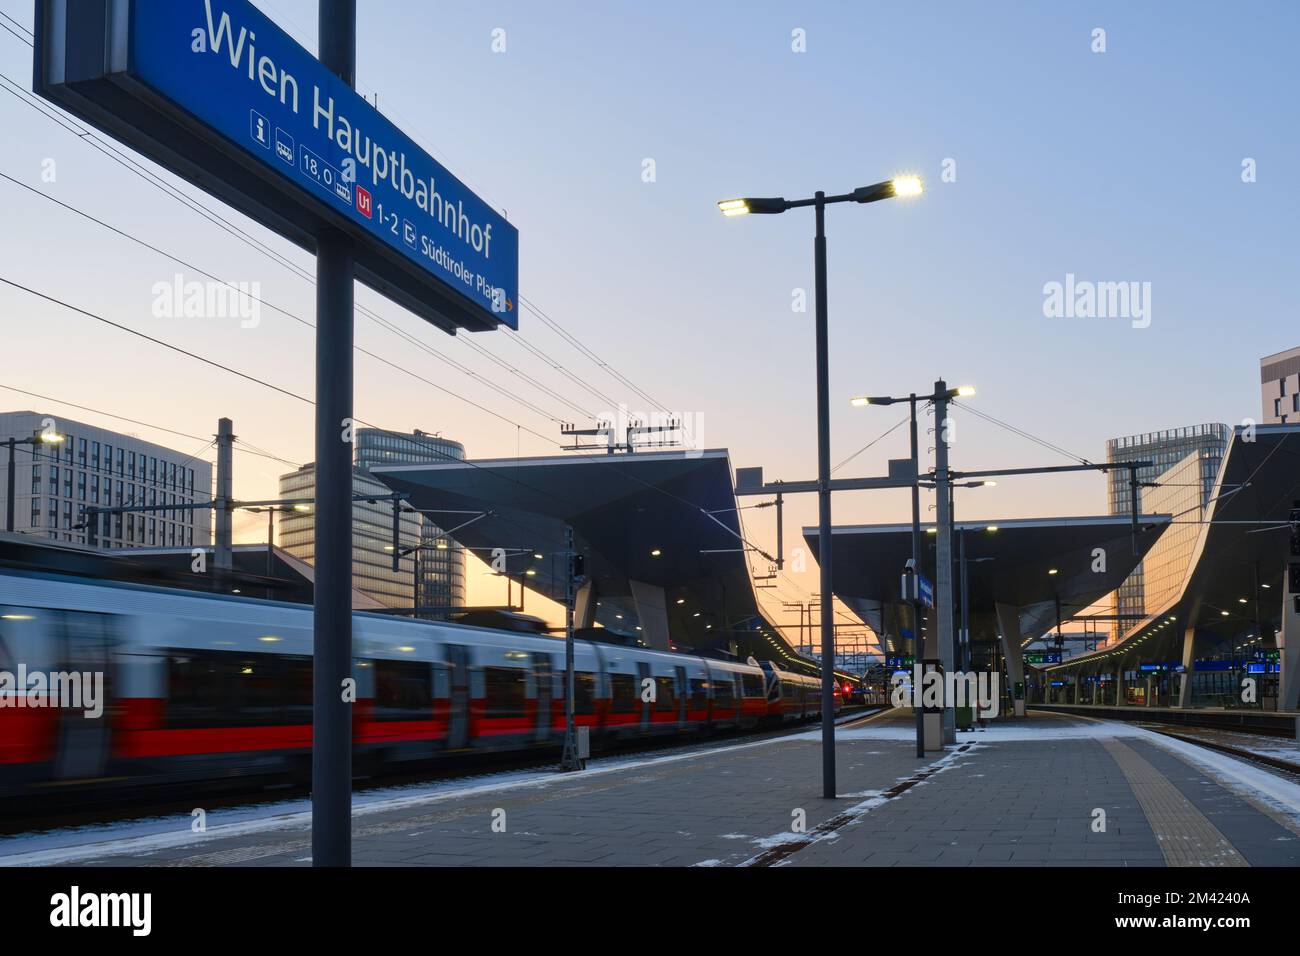 Stazione ferroviaria centrale di Vienna Hauptbahnhof, di sera con binari ferroviari. Vienna, Austria, trasporti, trasporti. Foto Stock